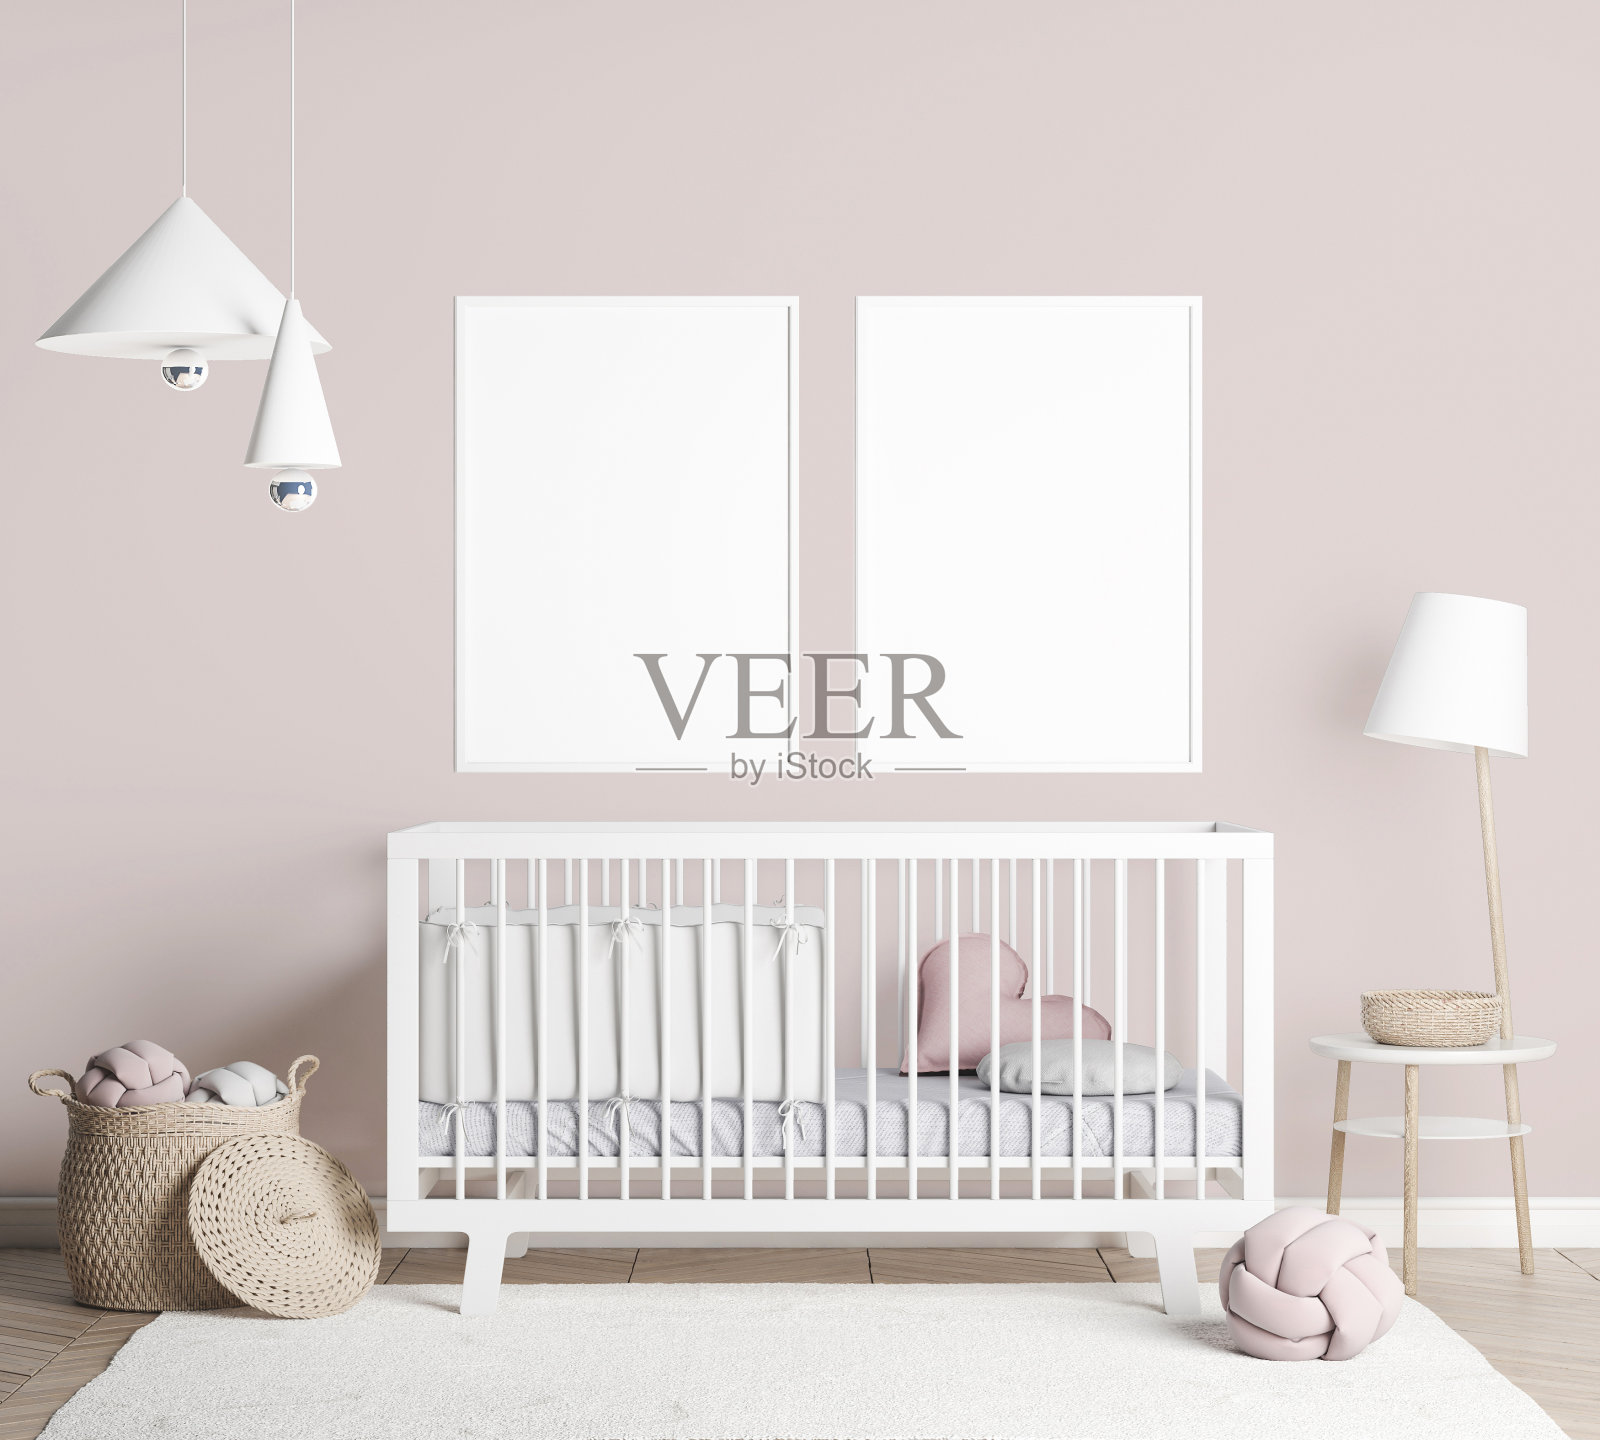 枕头和玩具在白色木制婴儿床藤条篮子和白色灯在明亮的育儿室卧室。库存图片照片摄影图片